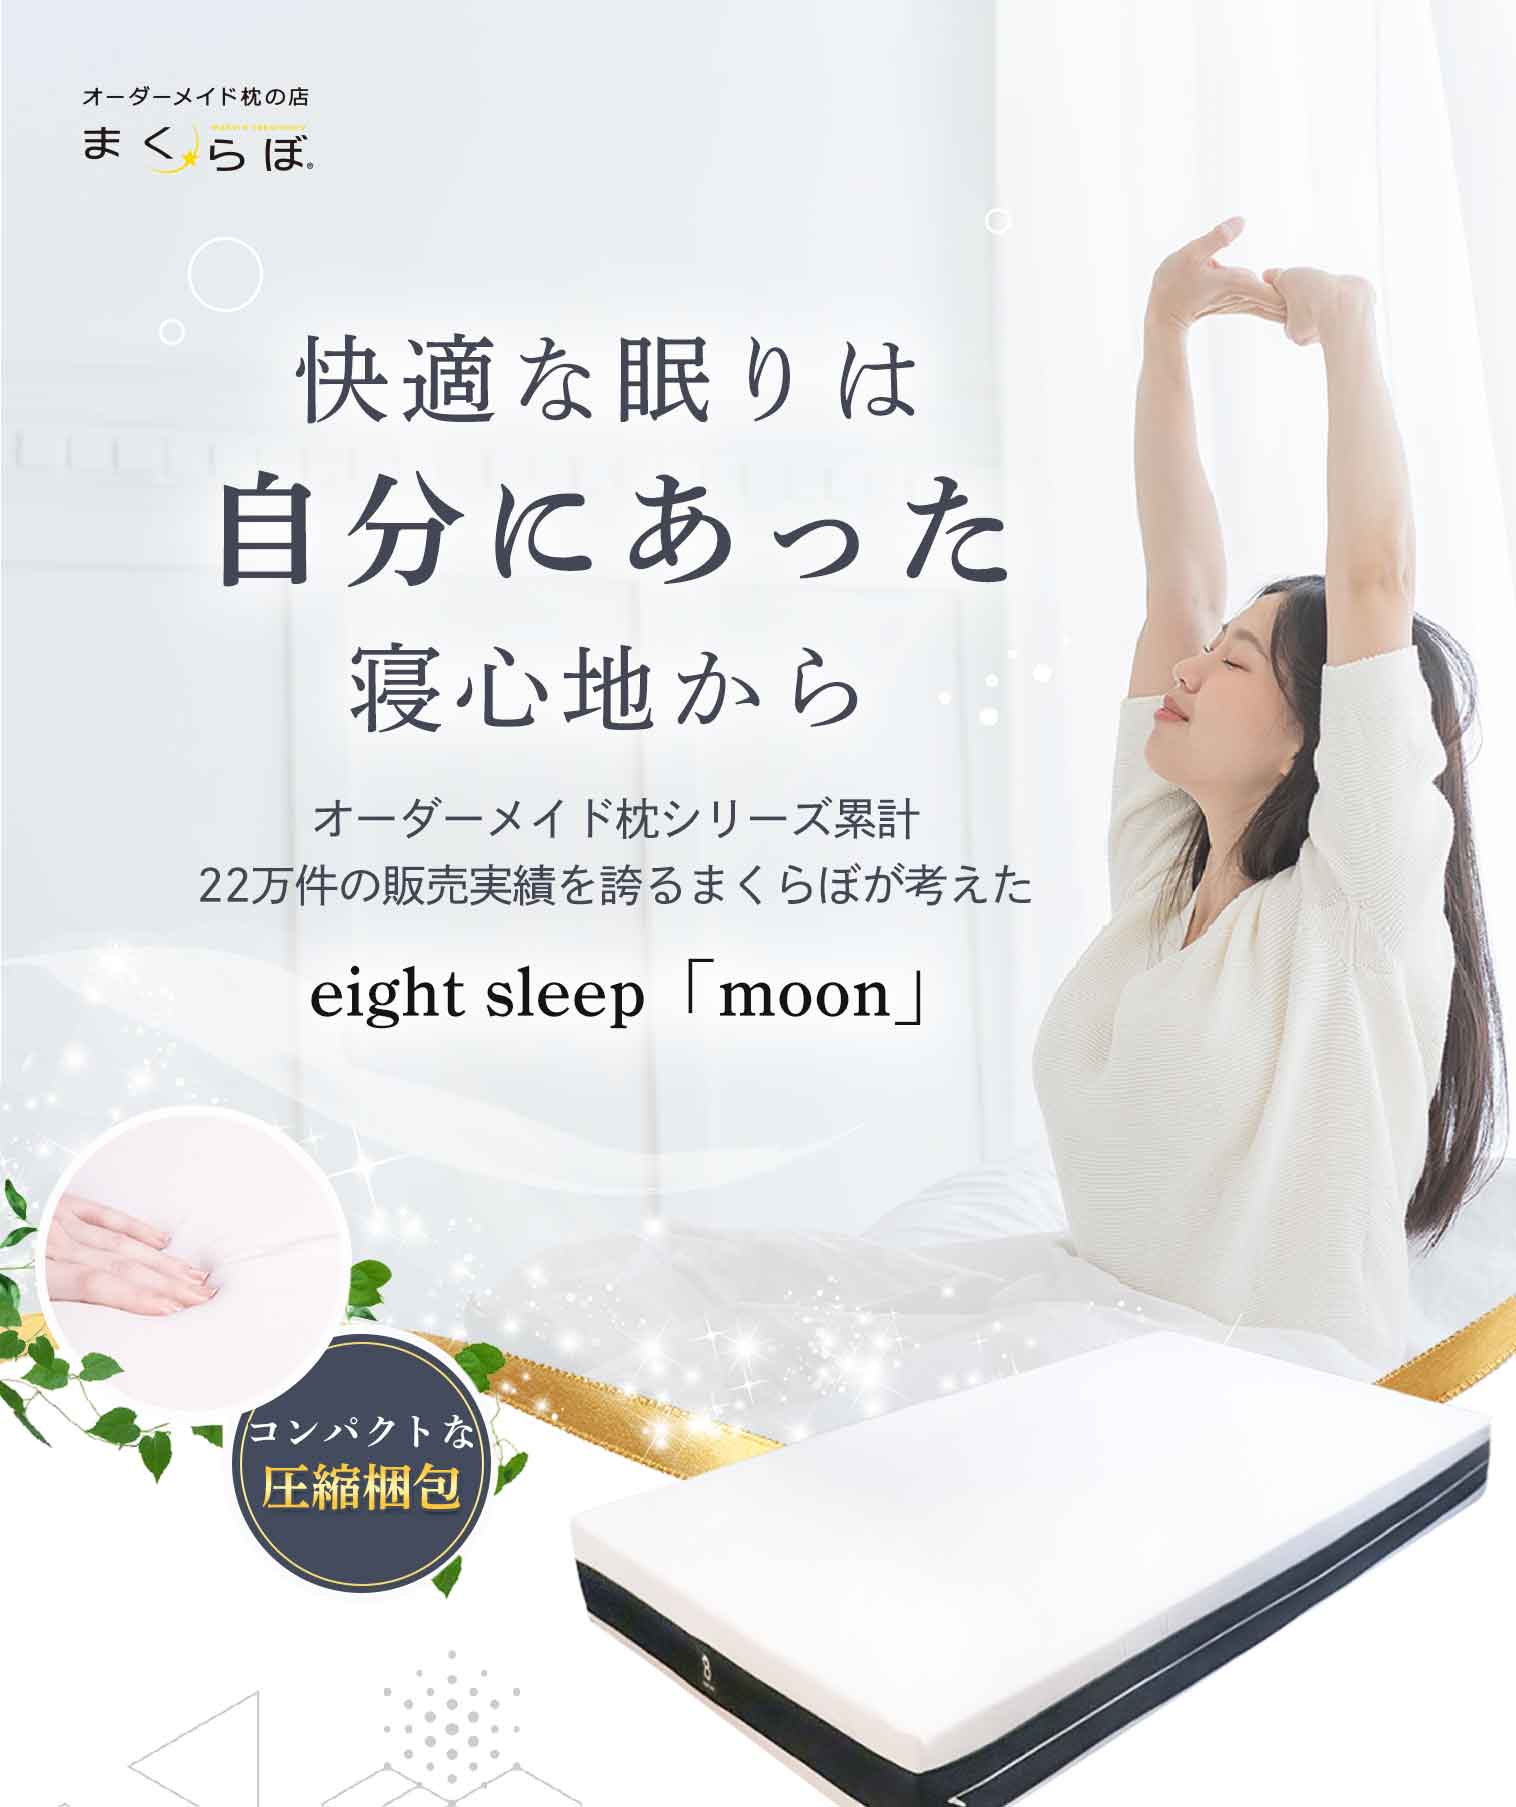 eight sleep「moon」マットレス | オーダーメイド枕の店【まくらぼ】